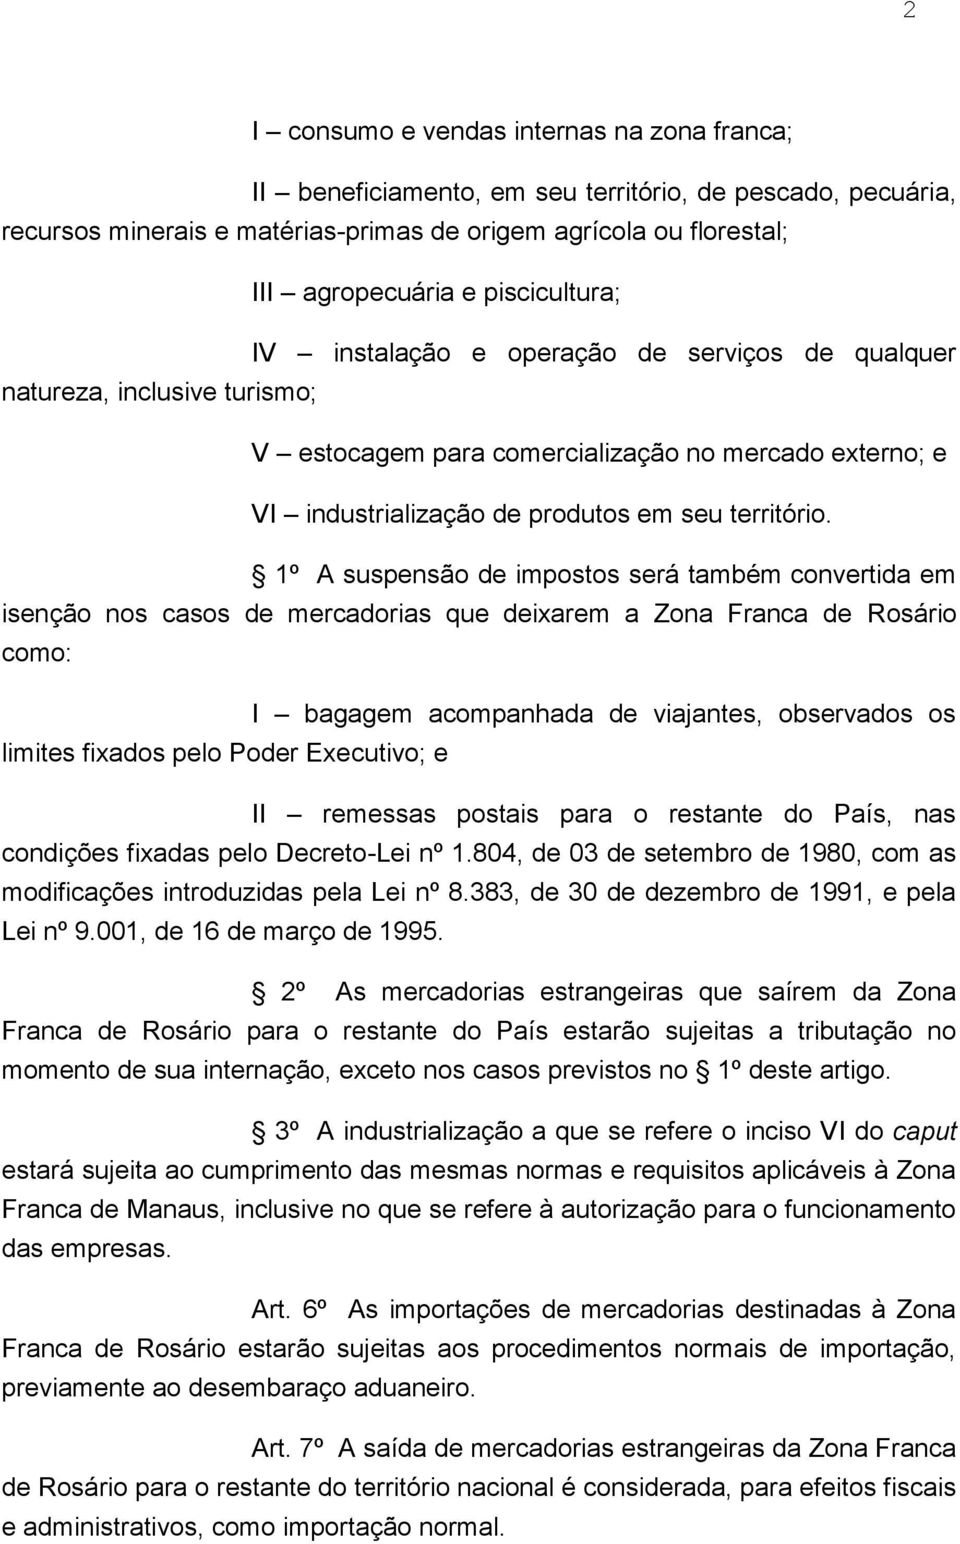 1º A suspensão de impostos será também convertida em isenção nos casos de mercadorias que deixarem a Zona Franca de Rosário como: I bagagem acompanhada de viajantes, observados os limites fixados